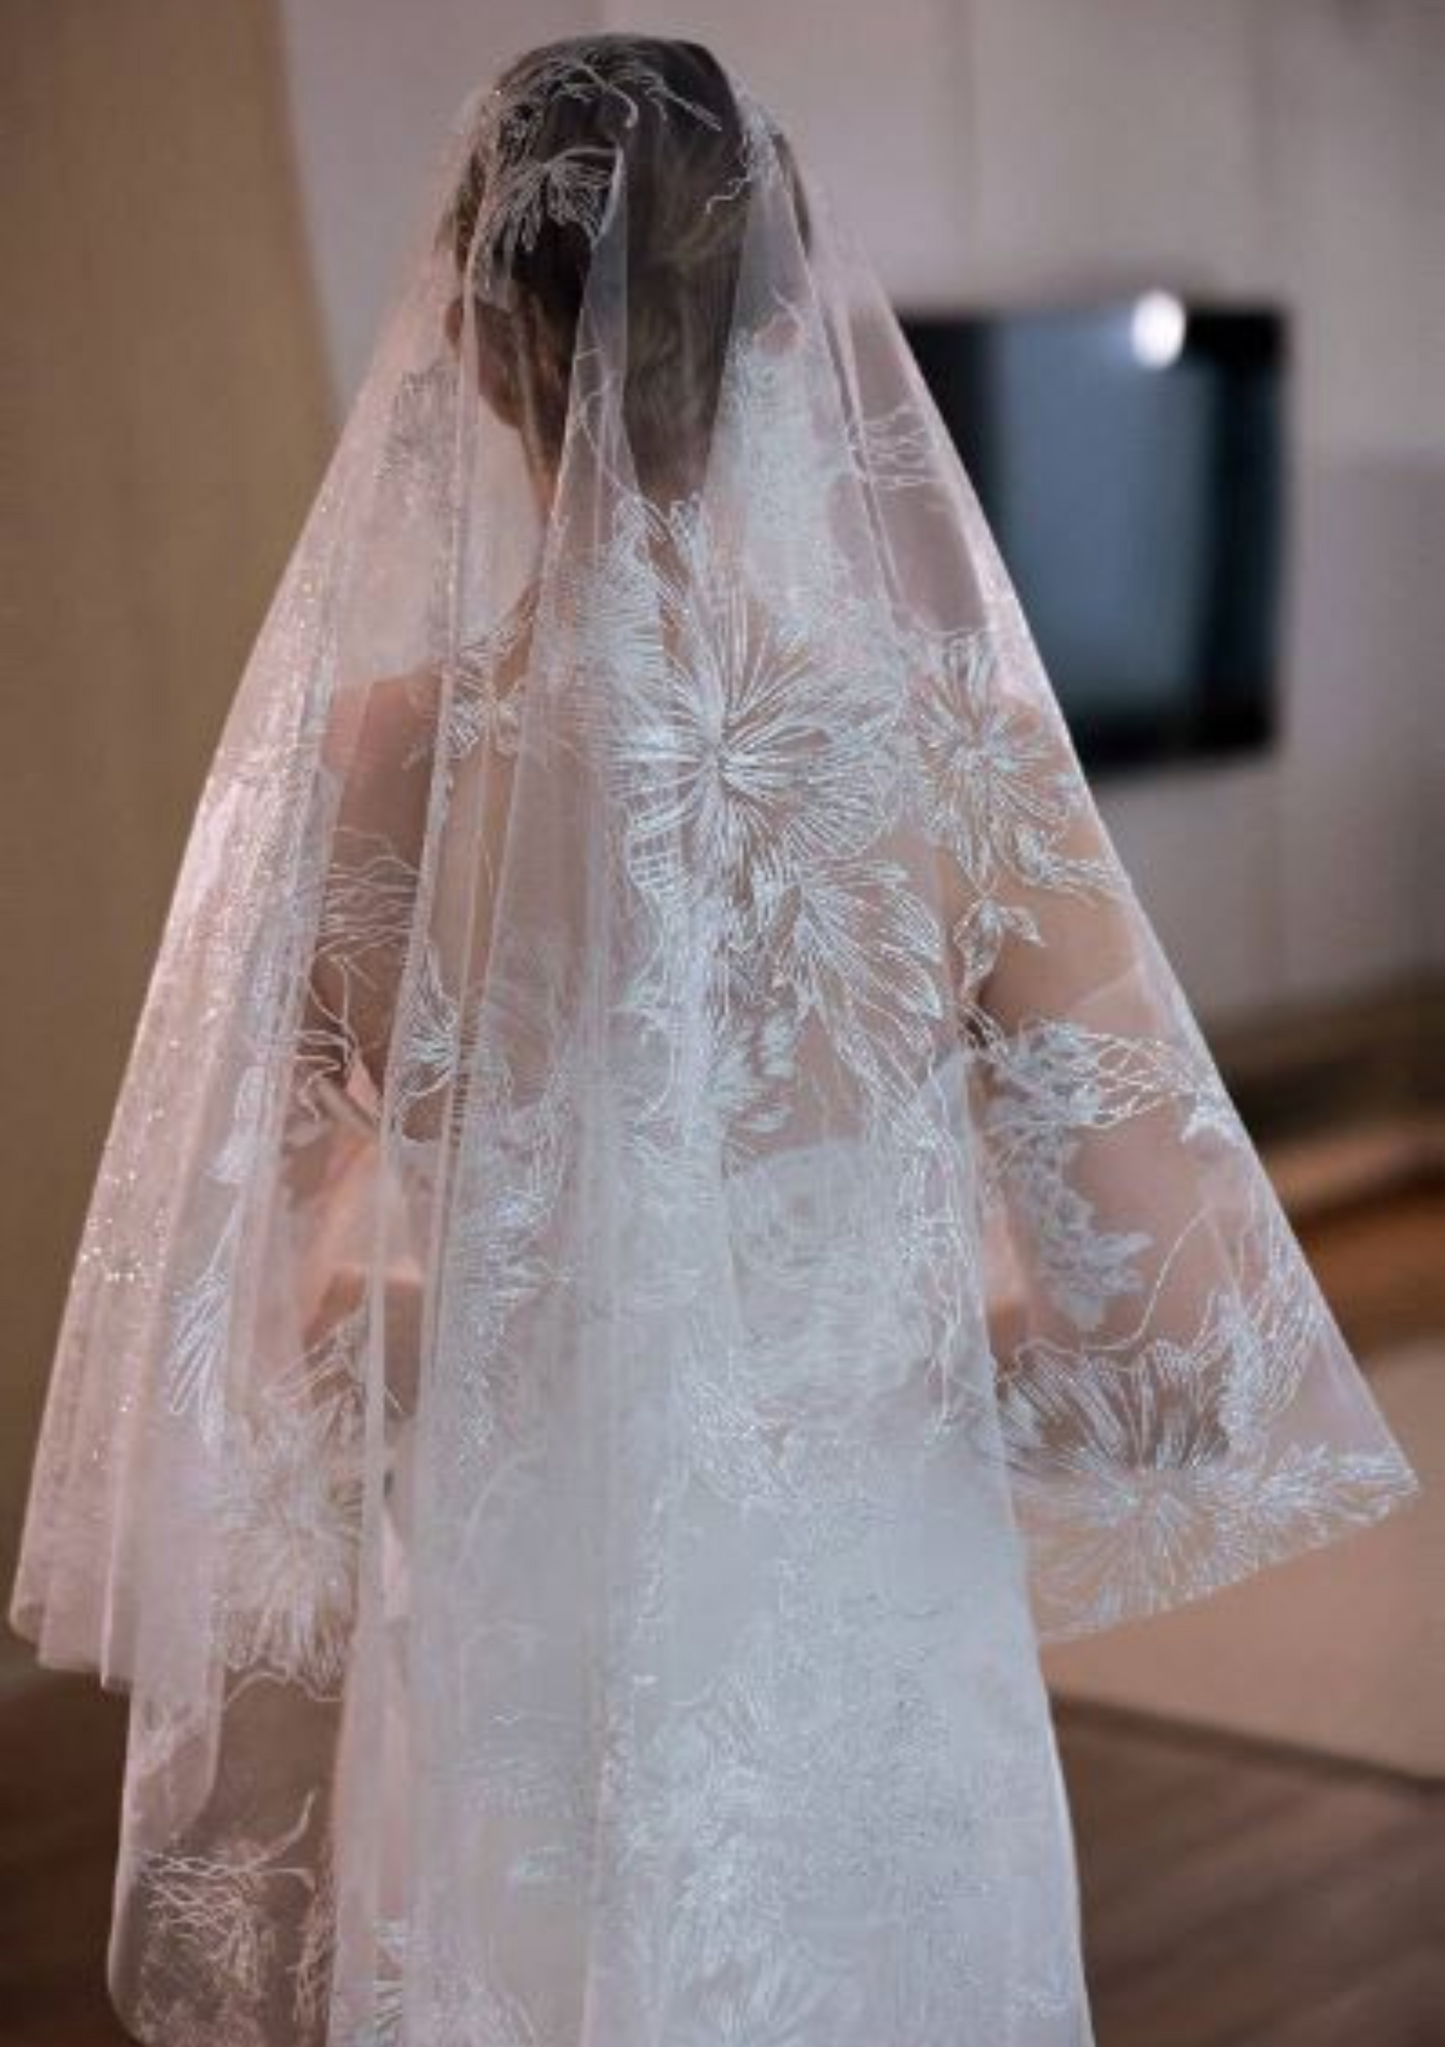 Ornate Lace Bridal Veil 3m